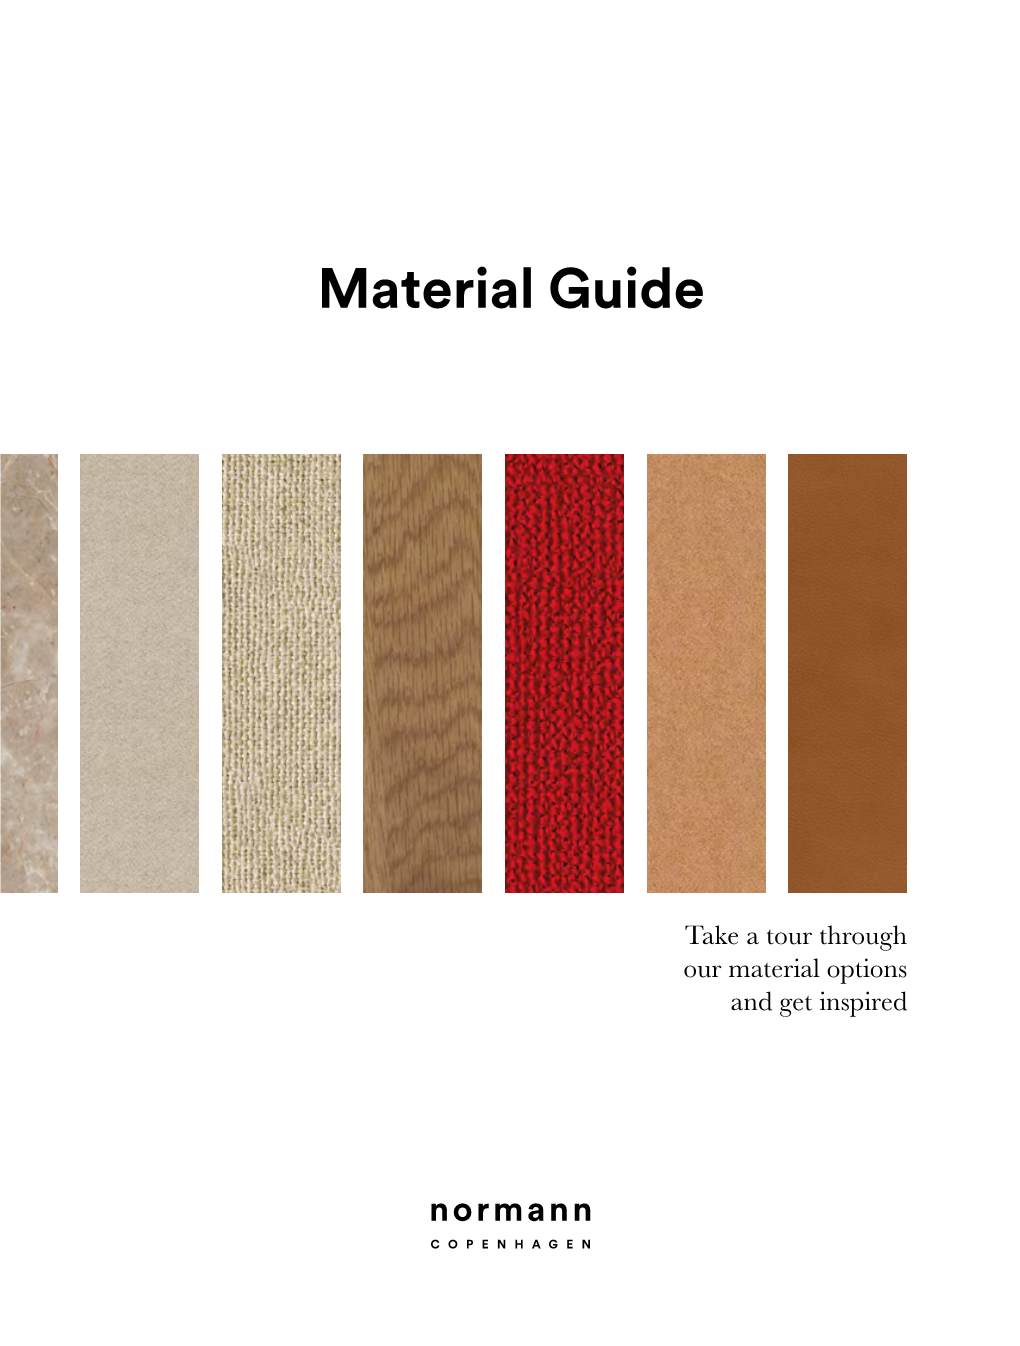 Material Guide